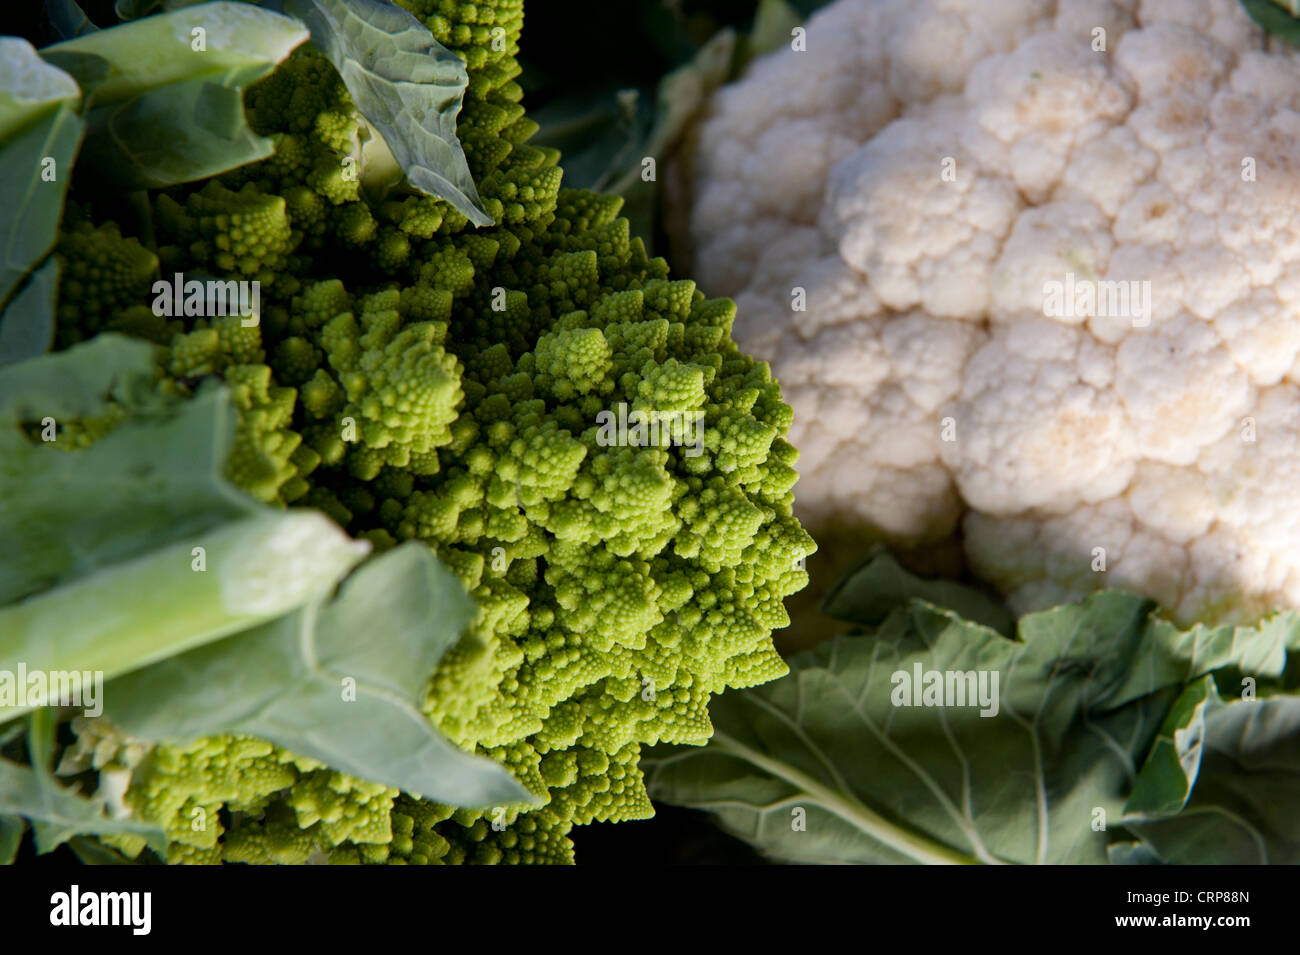 Cavolo broccolo Romanesco (Brassica oleracea L. var. italica) e regolari di cavolfiore bianco. Foto Stock